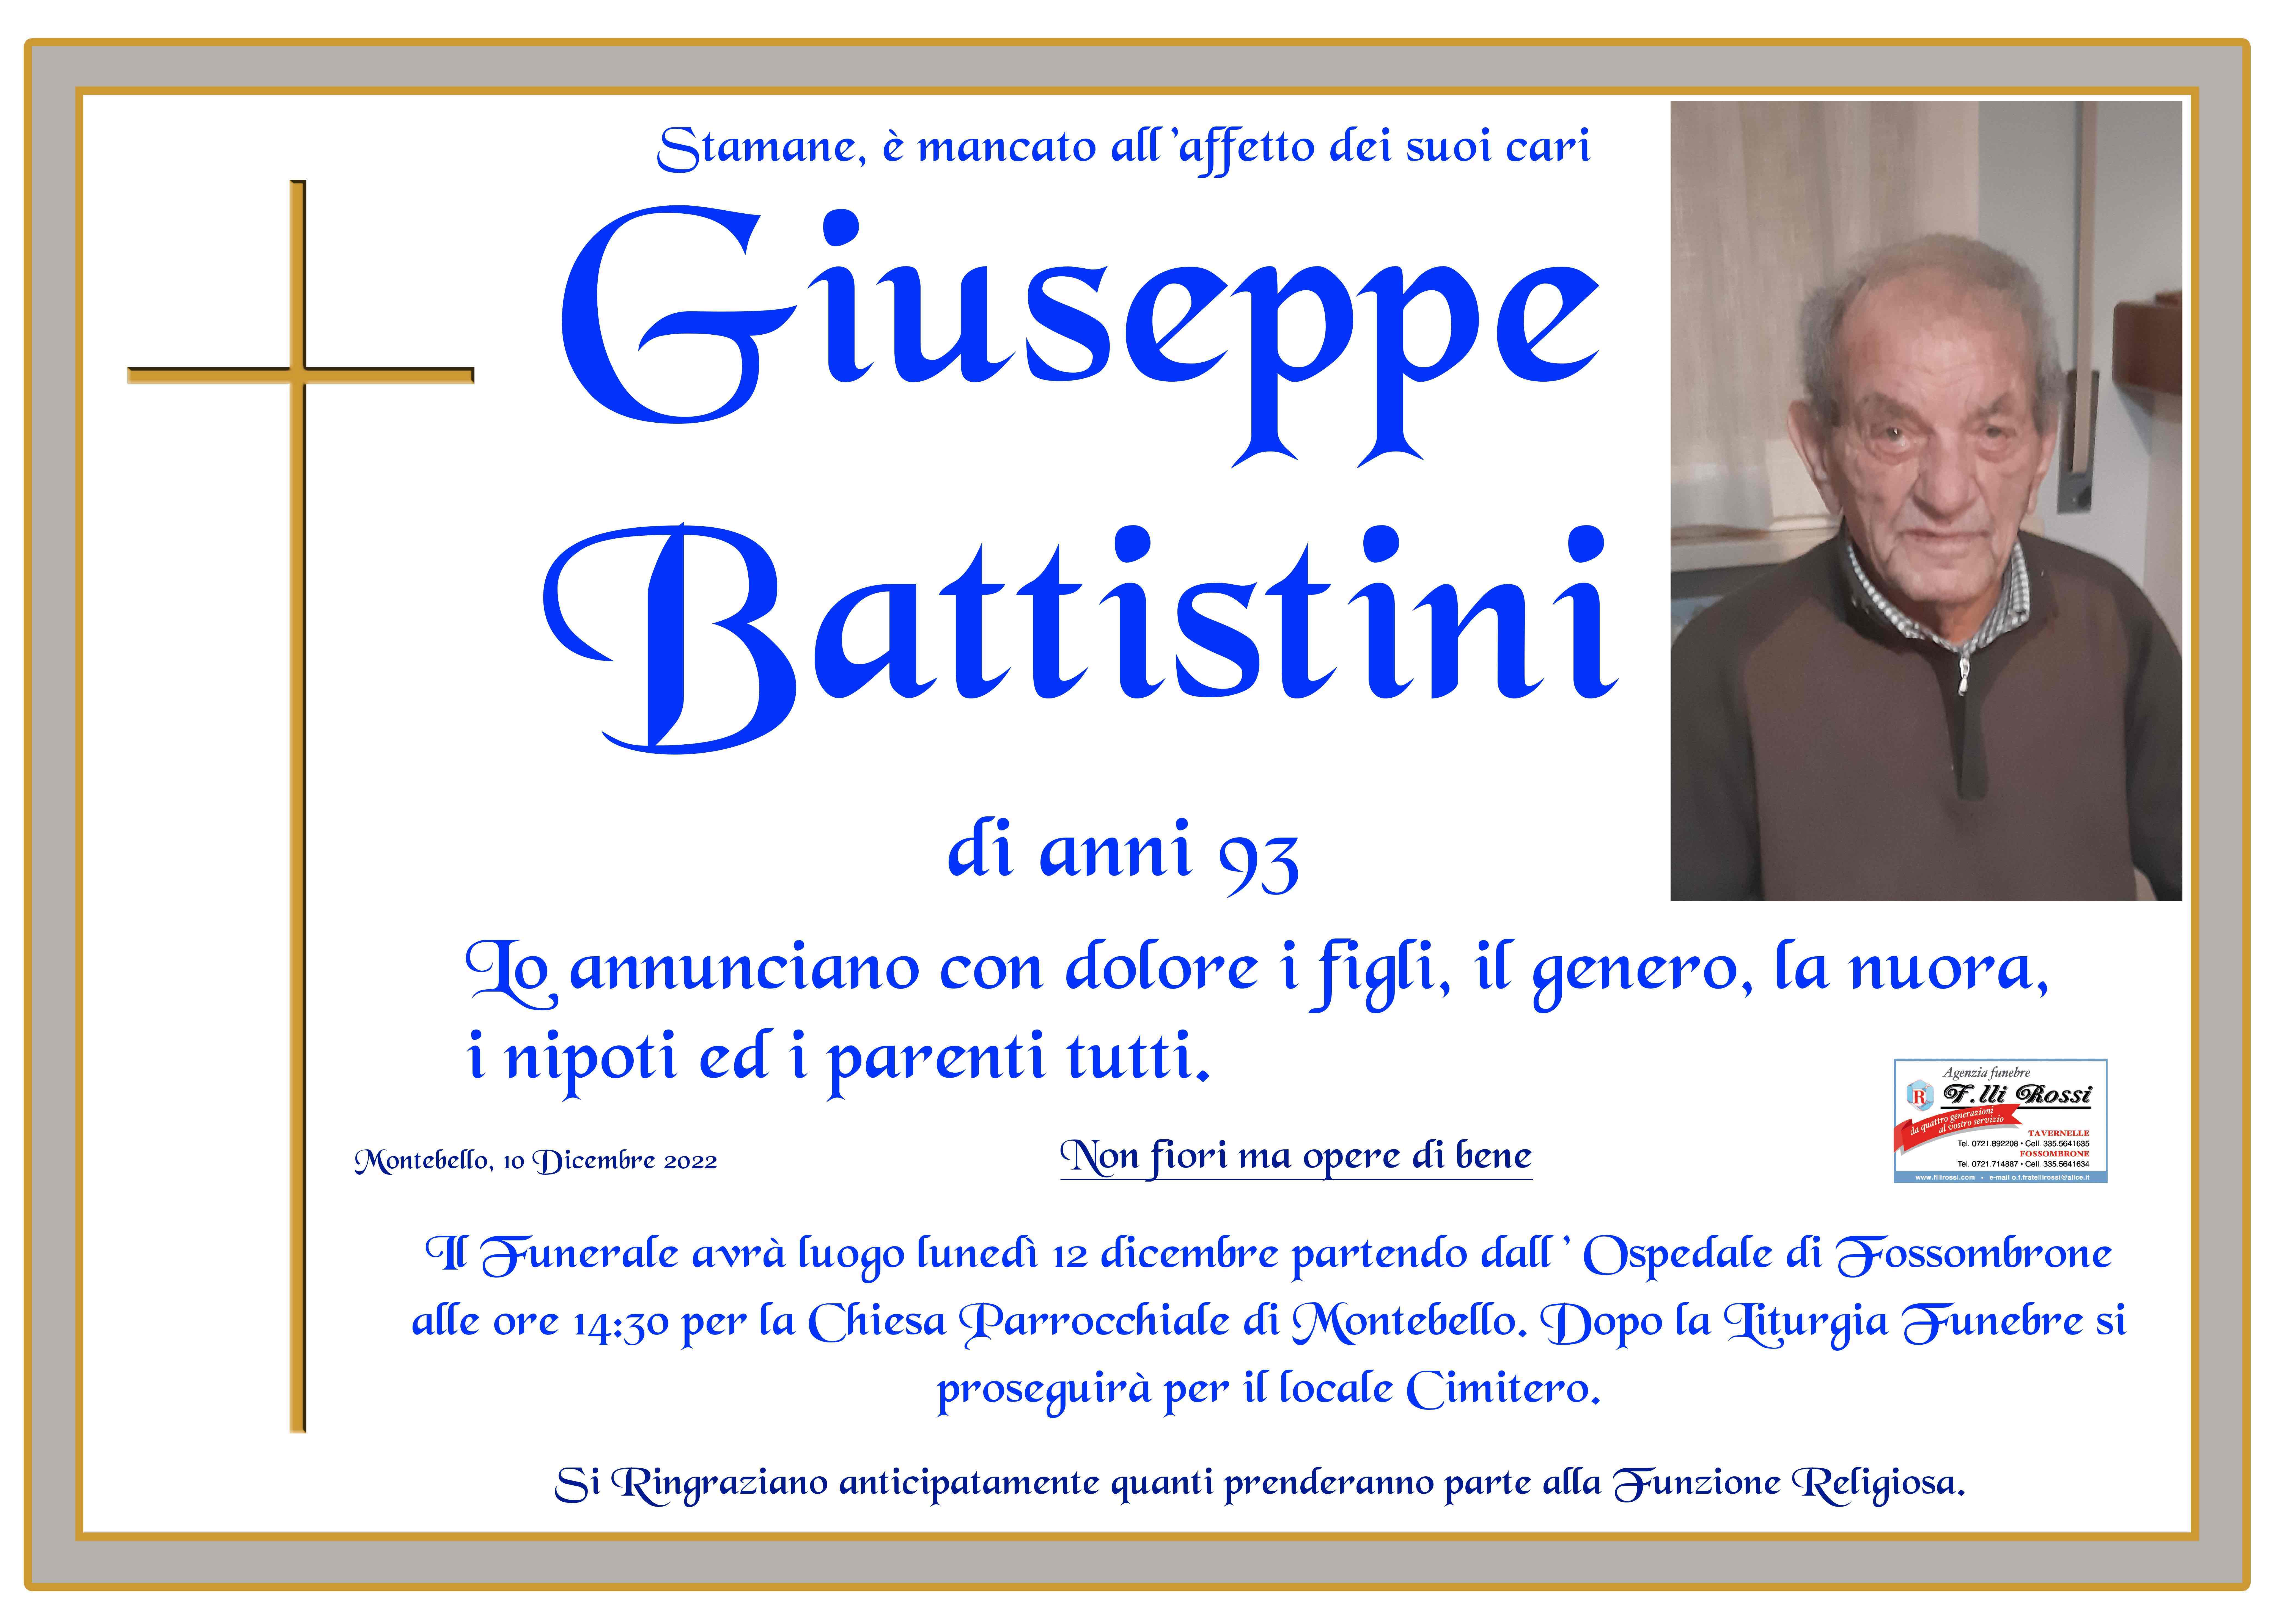 Giuseppe Battistini